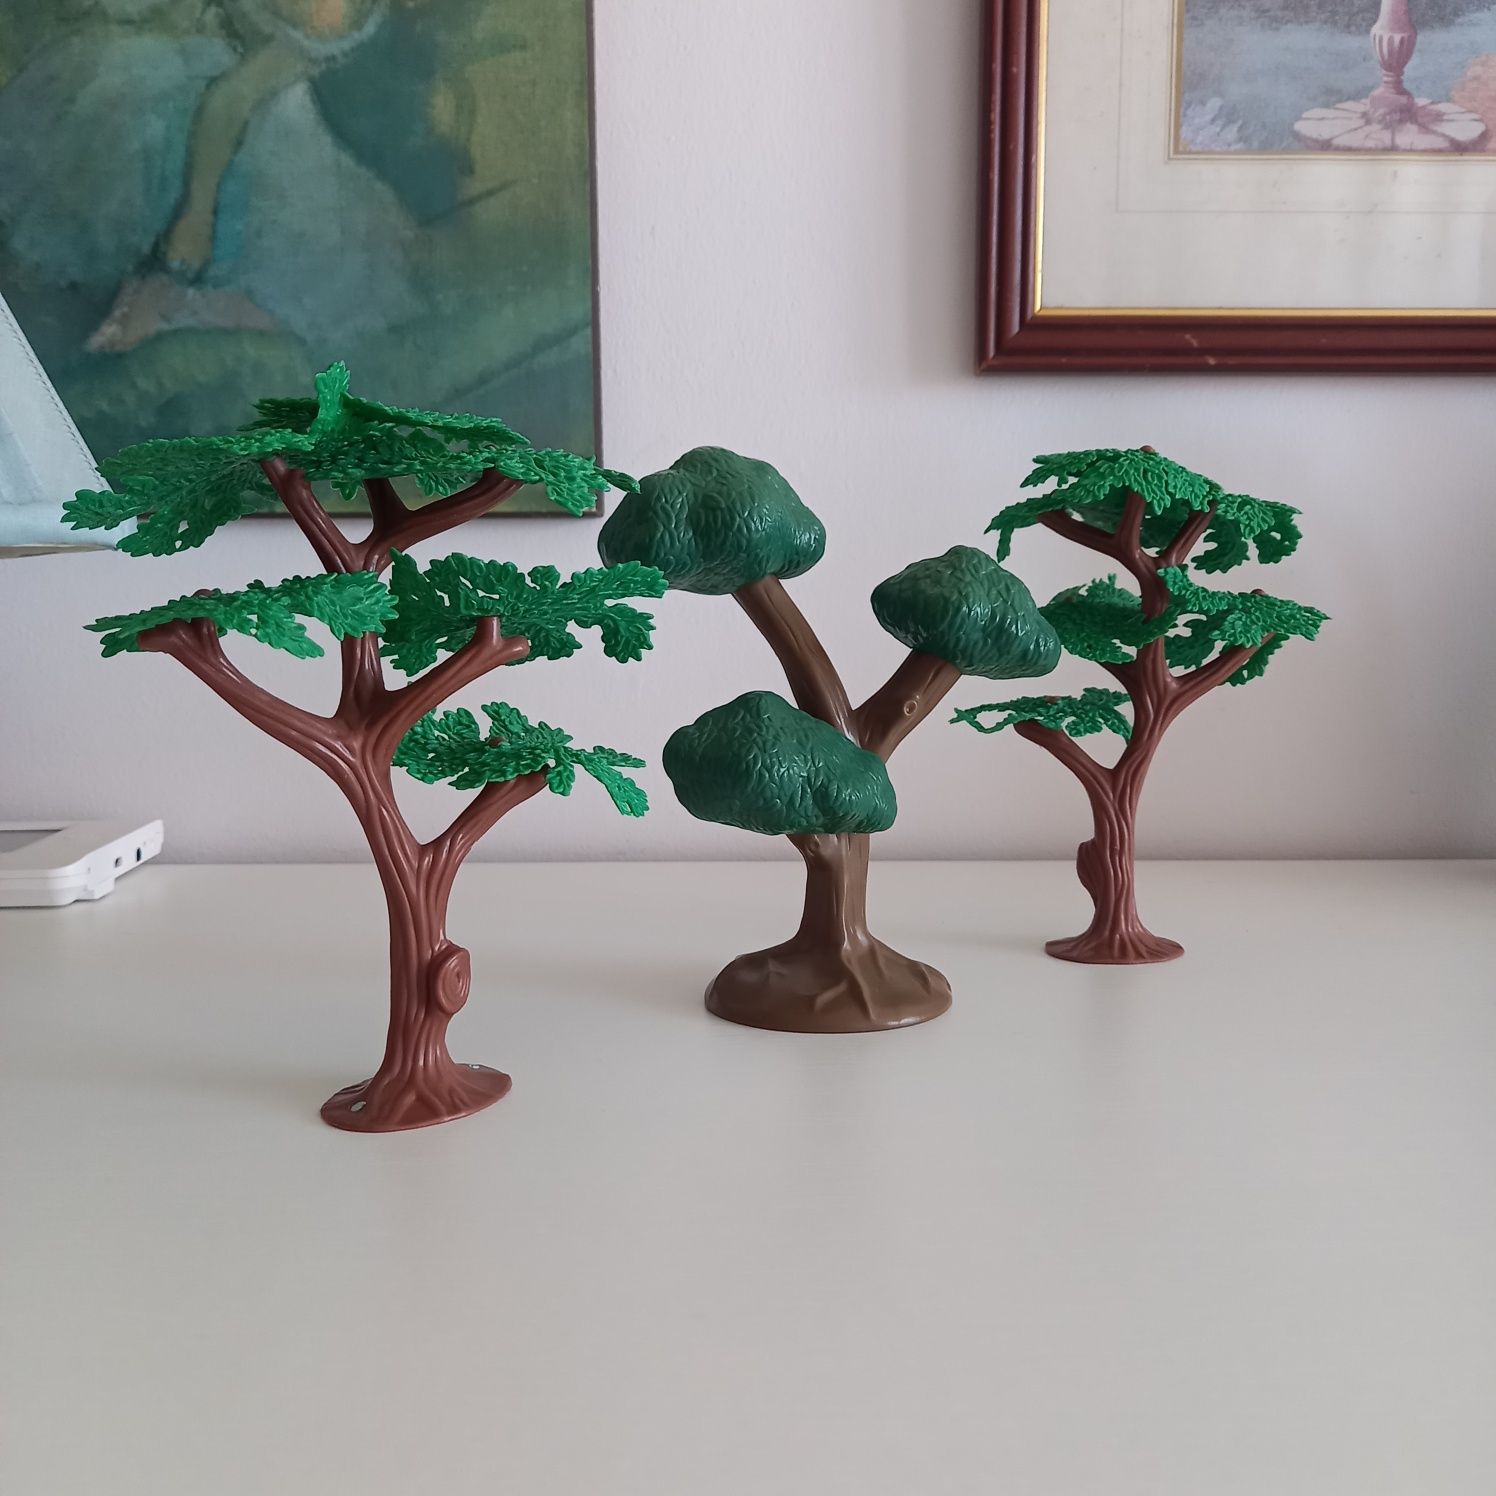 Urocze 3 drzewka 15 cm plastikowe gumowe drzewo ozdoba figurka zabawka